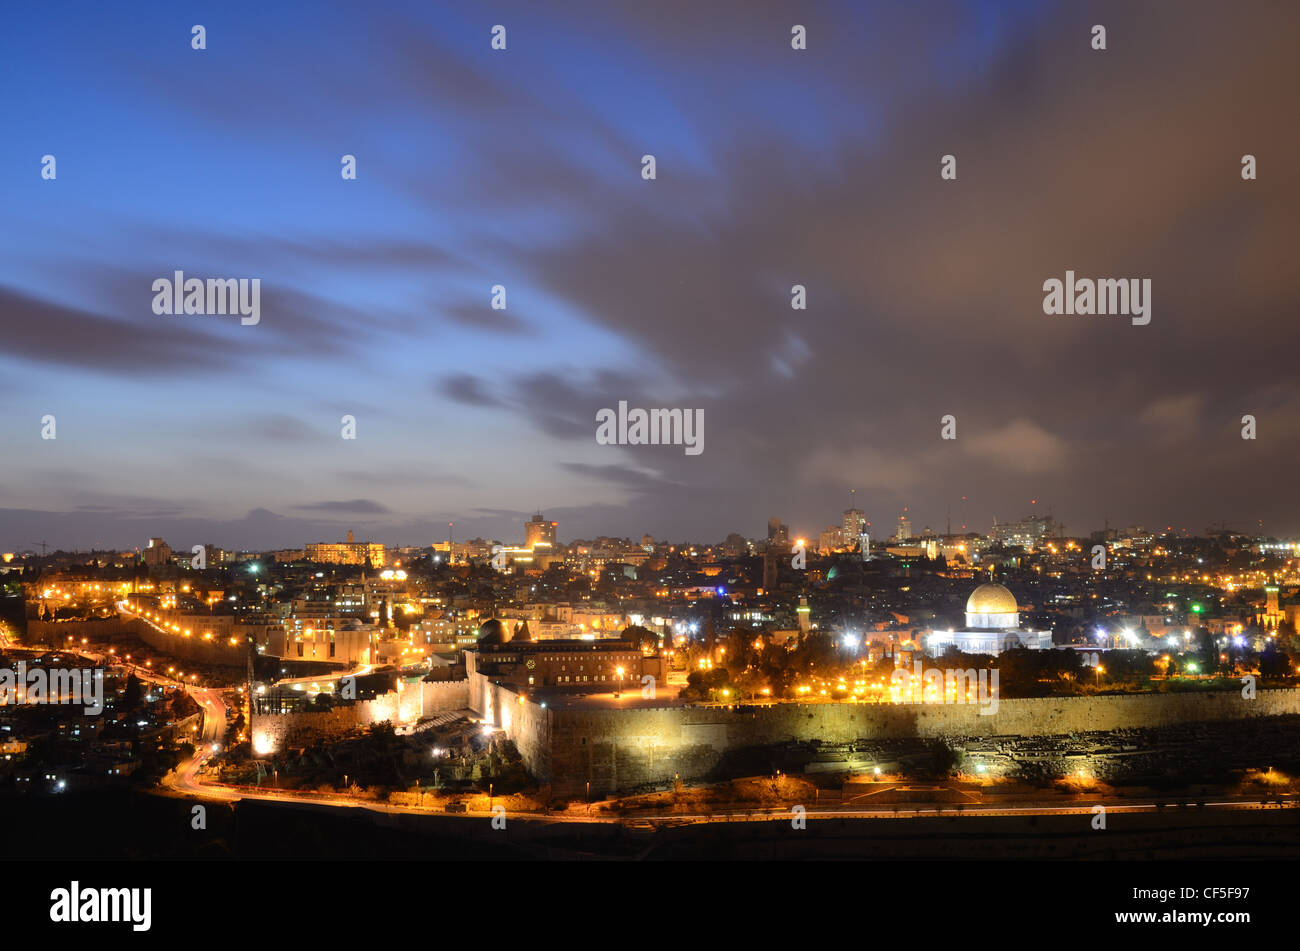 Skyline of the Old City of Jerusalem, Israel. Stock Photo